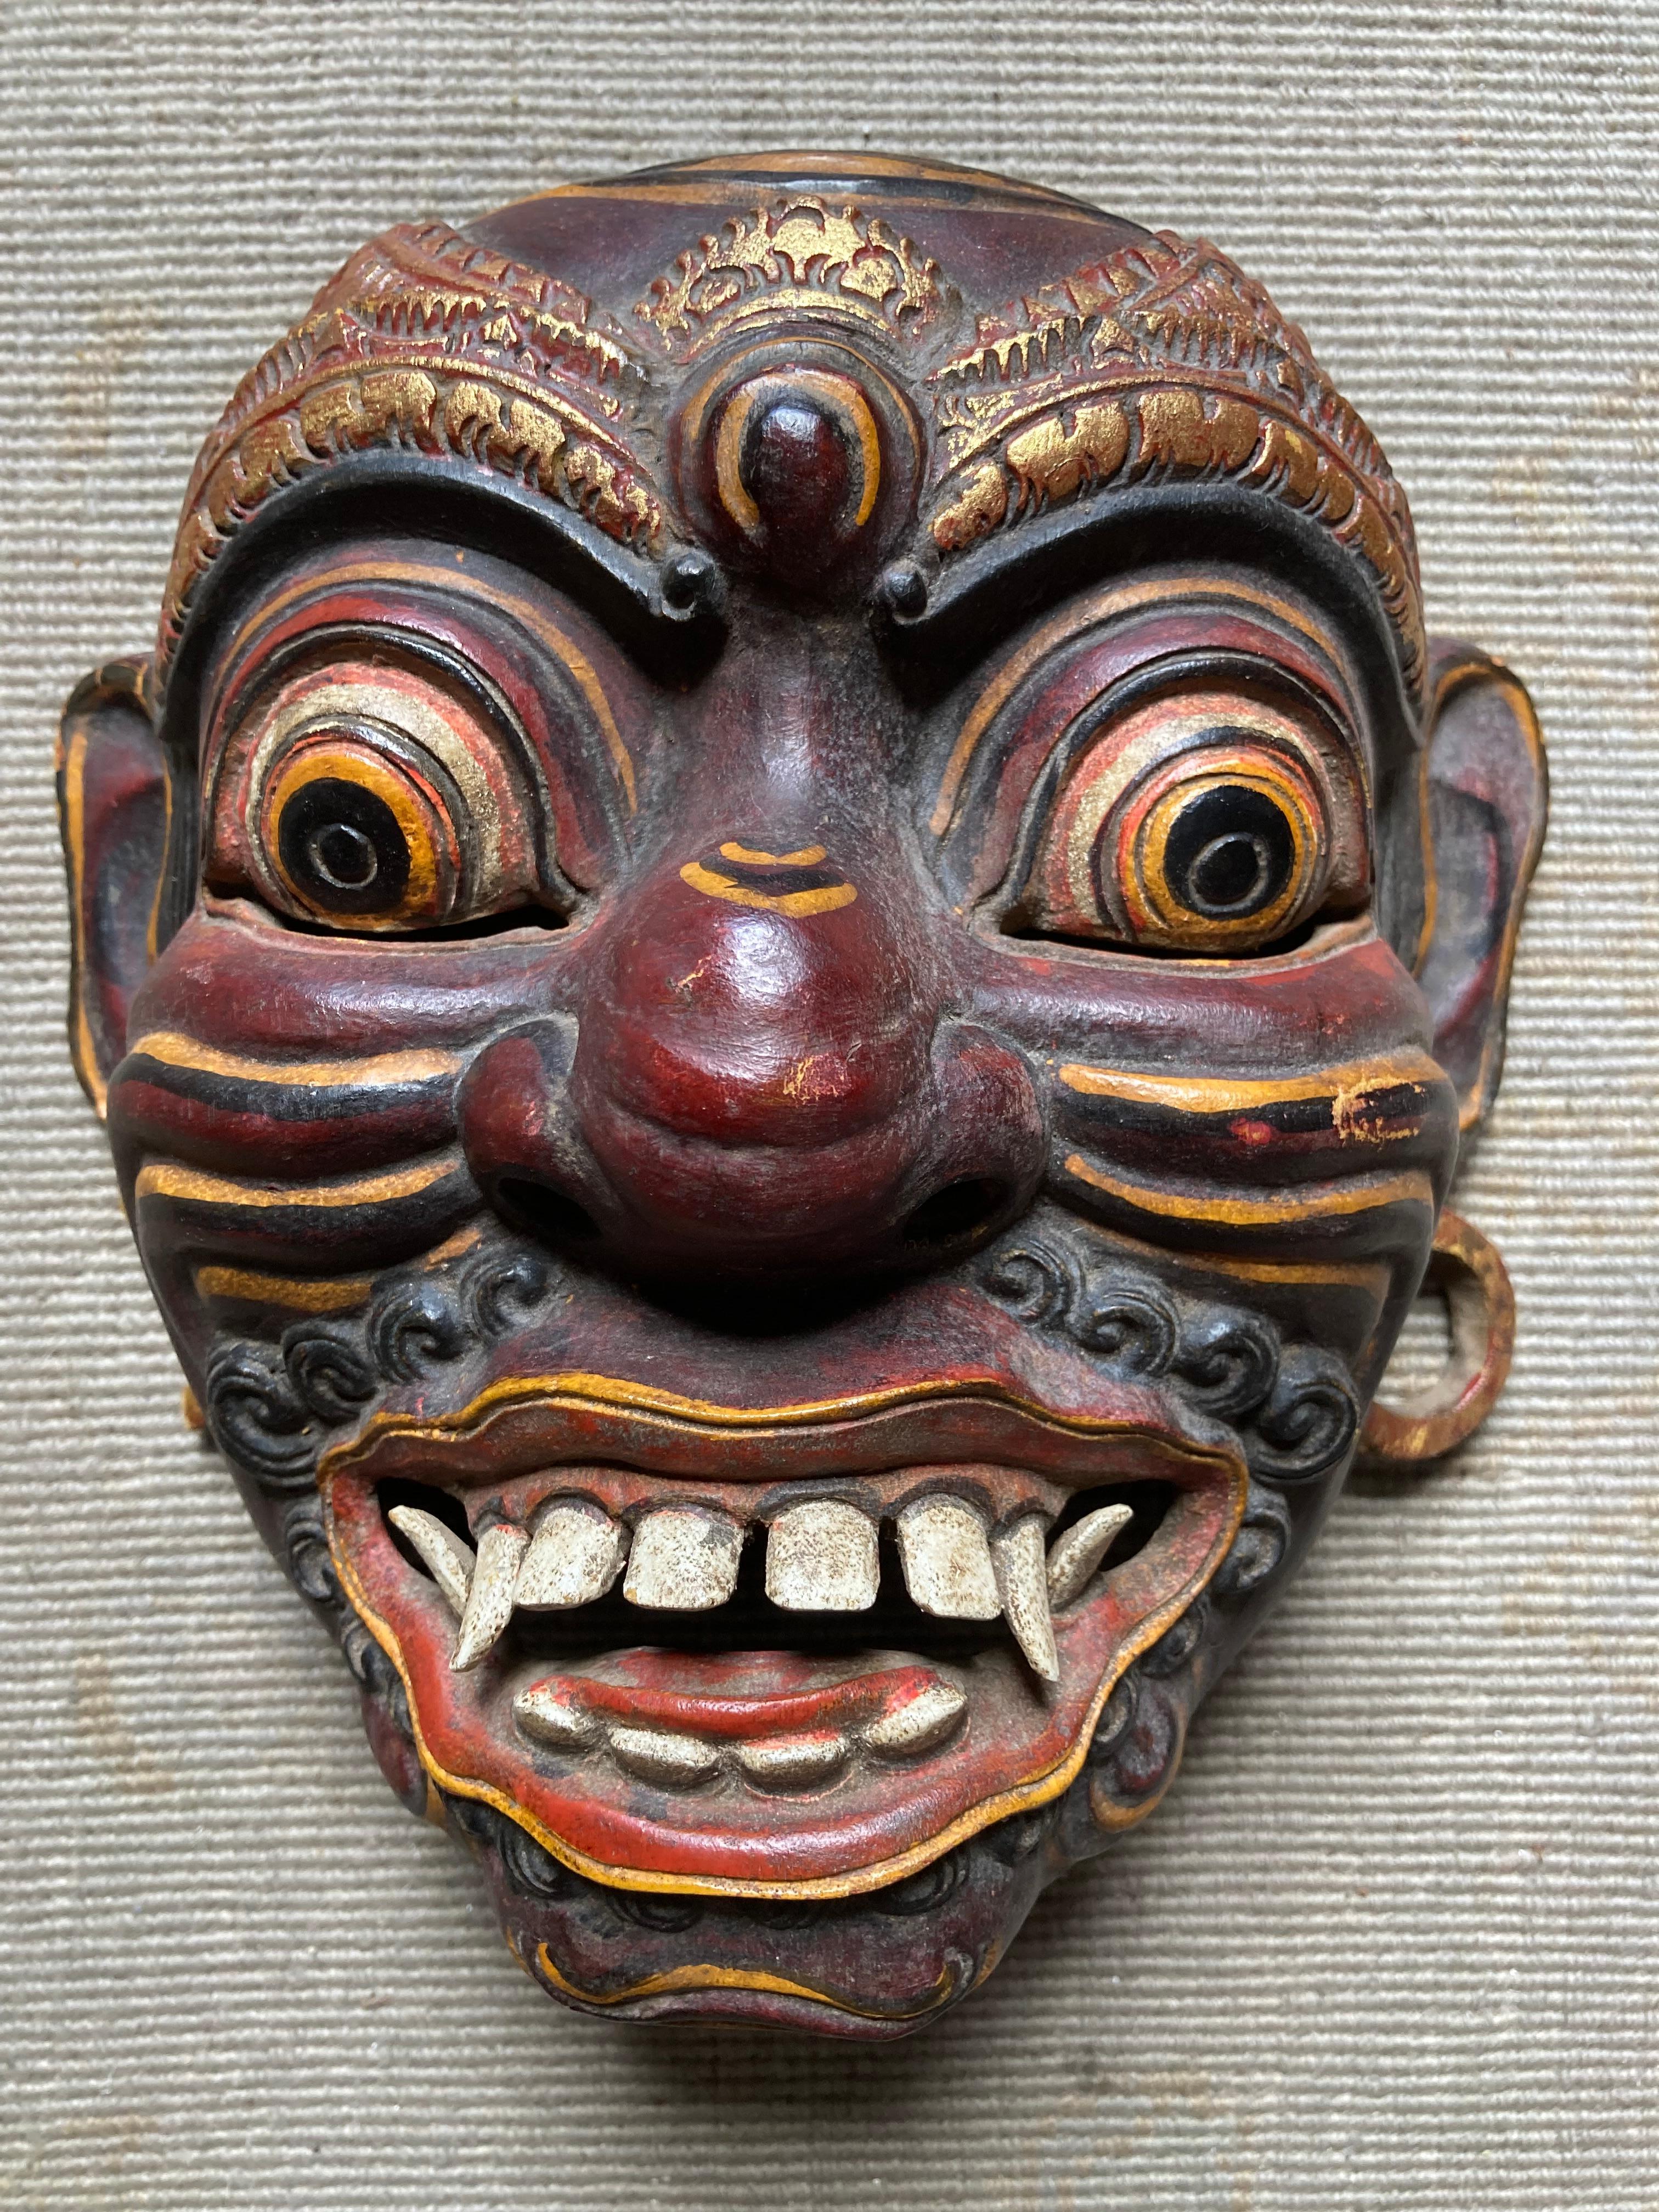 Eine Sammlung von fünf handgefertigten japanischen Noh-Drama-Masken, vier davon aus handgeschnitztem Holz und eine (die größte, die auf der einen Hälfte schwarz-rot und auf der anderen weiß ist) aus Pappmaché. Der größte ist 15